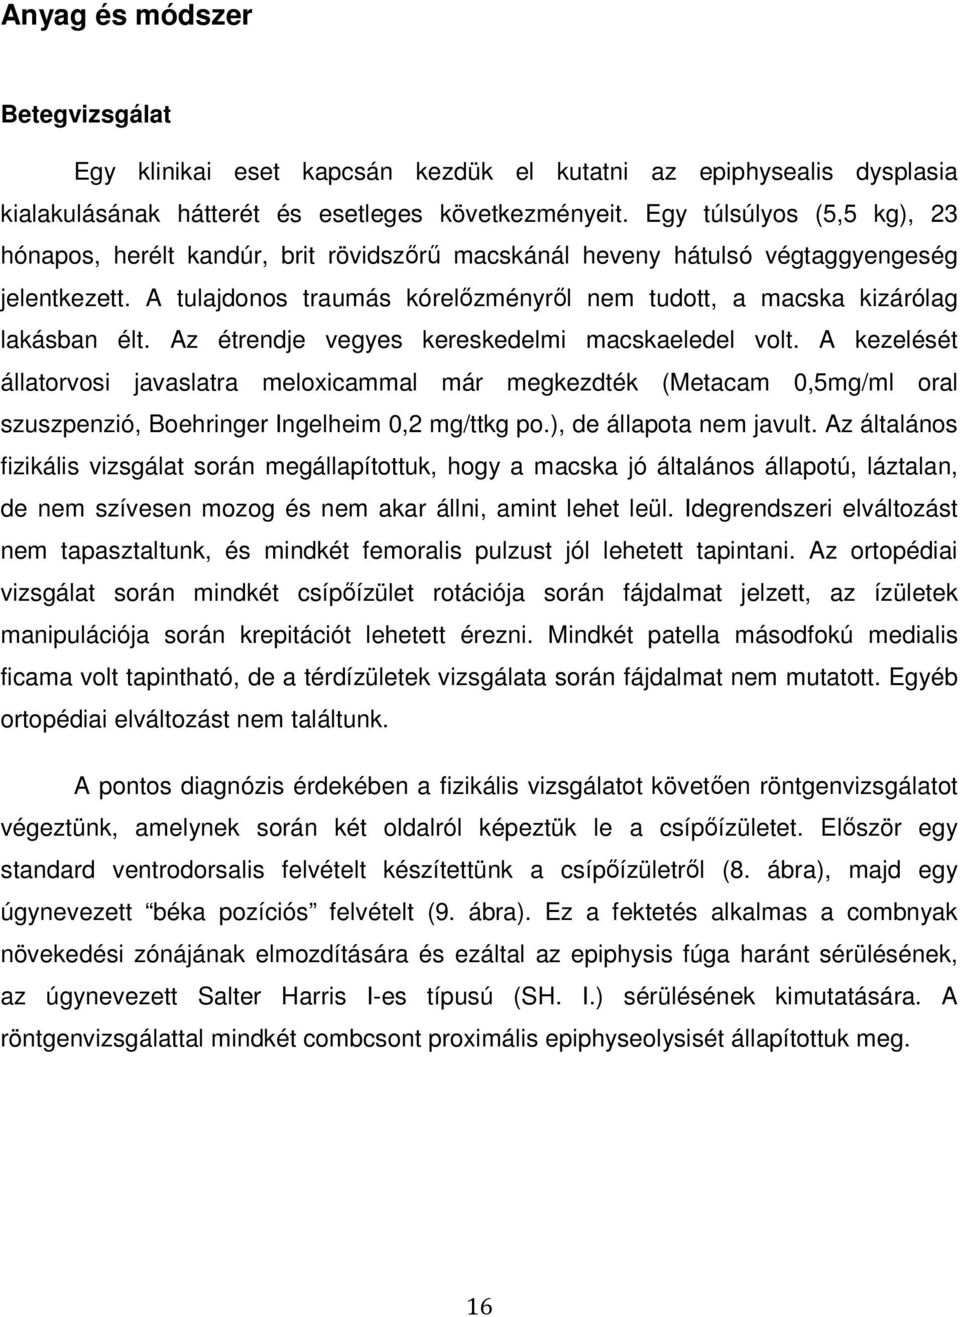 Szent István Egyetem Állatorvos-tudományi Kar. Dr. Matskási Imola - PDF  Free Download